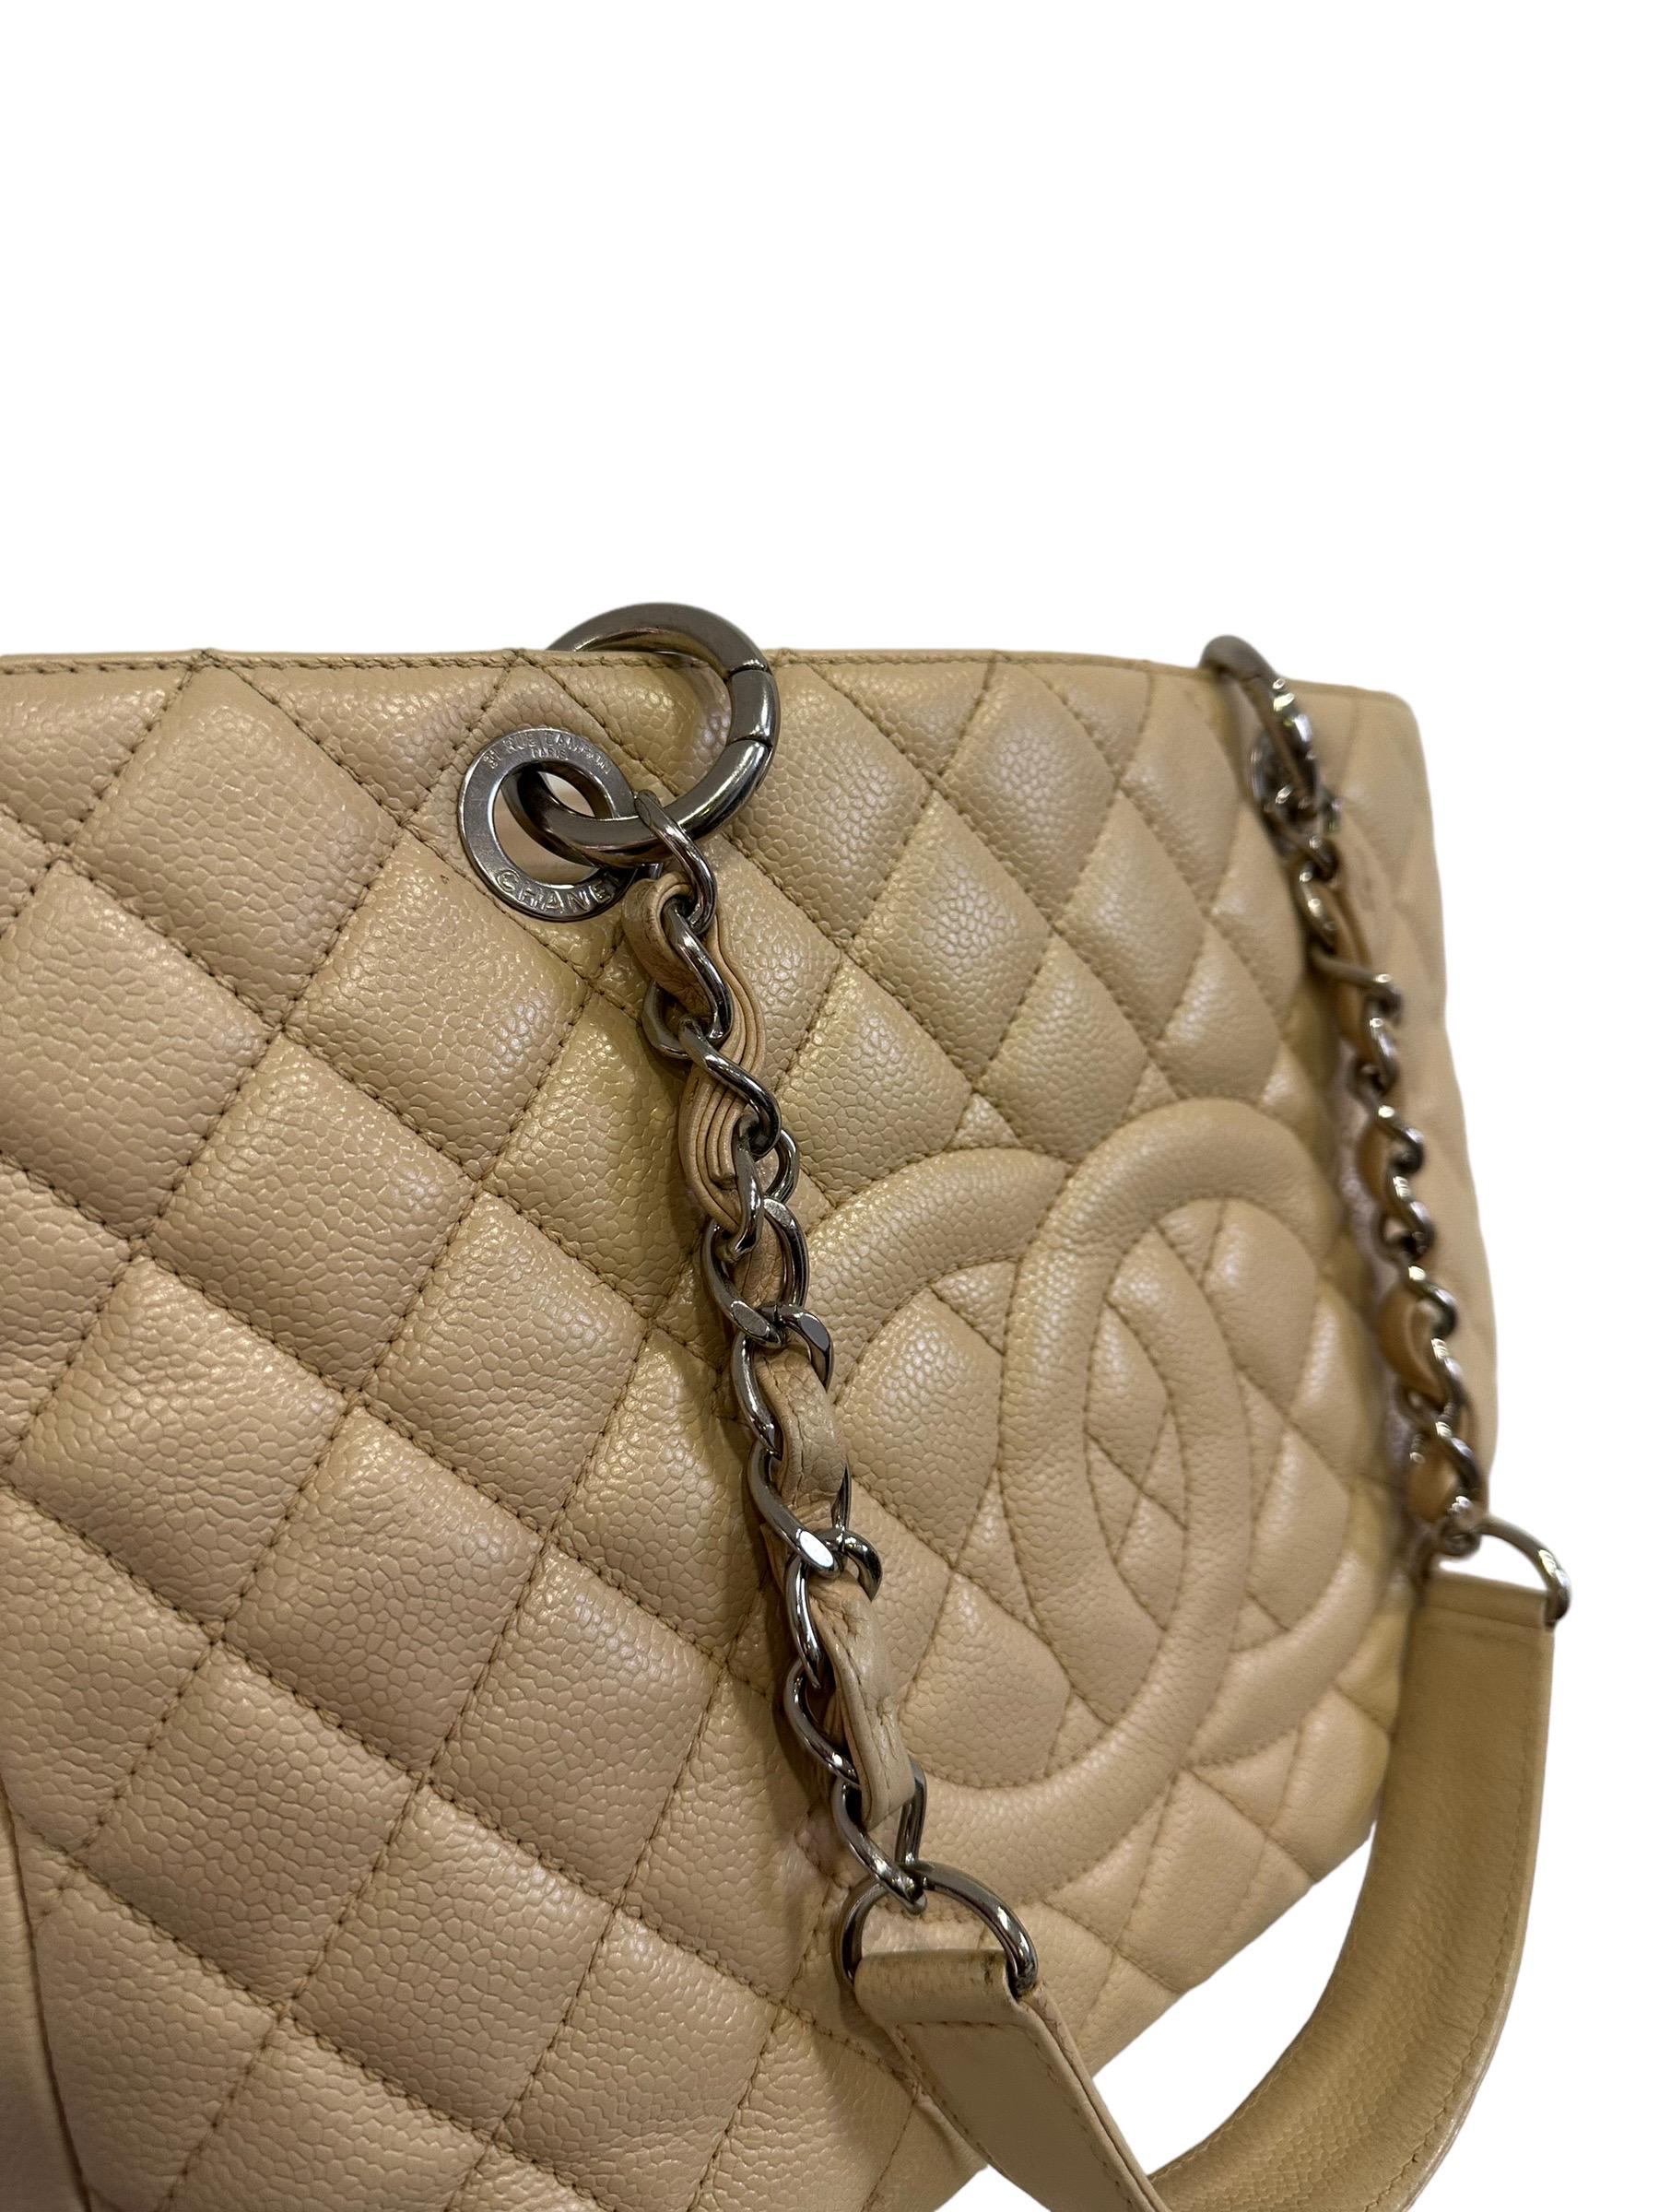 2014 Chanel Beige Leather GST Shoulder Bag For Sale 2